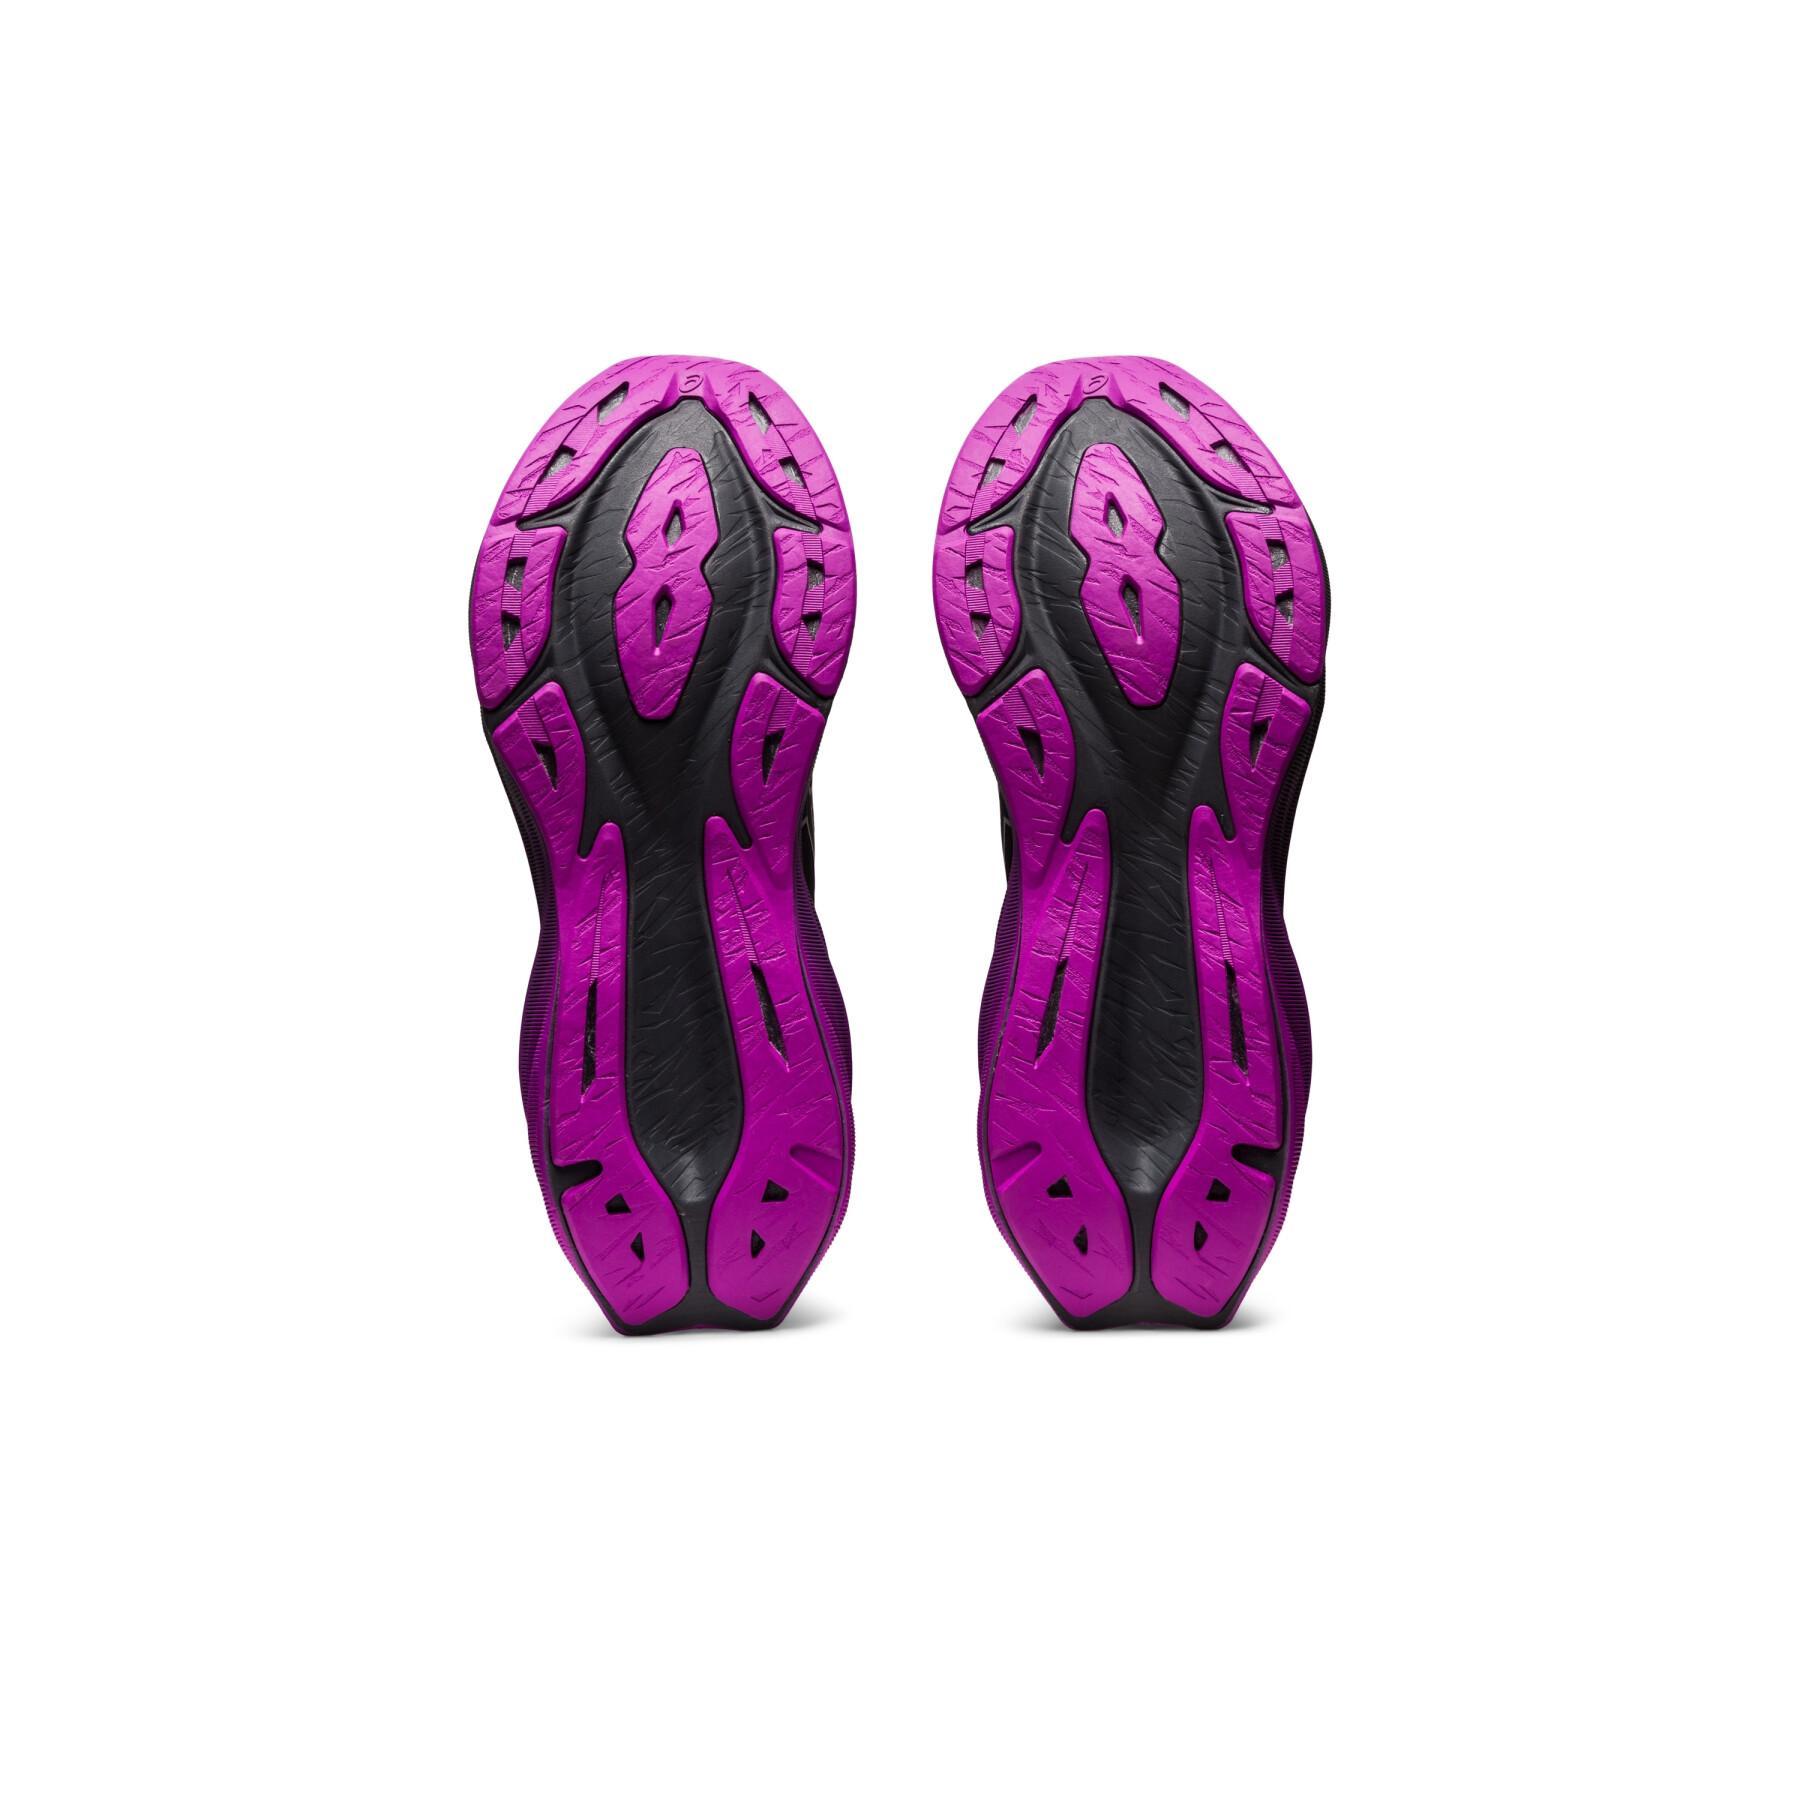 Sapatos de corrida para mulheres Asics Novablast 3 - Lite-Show